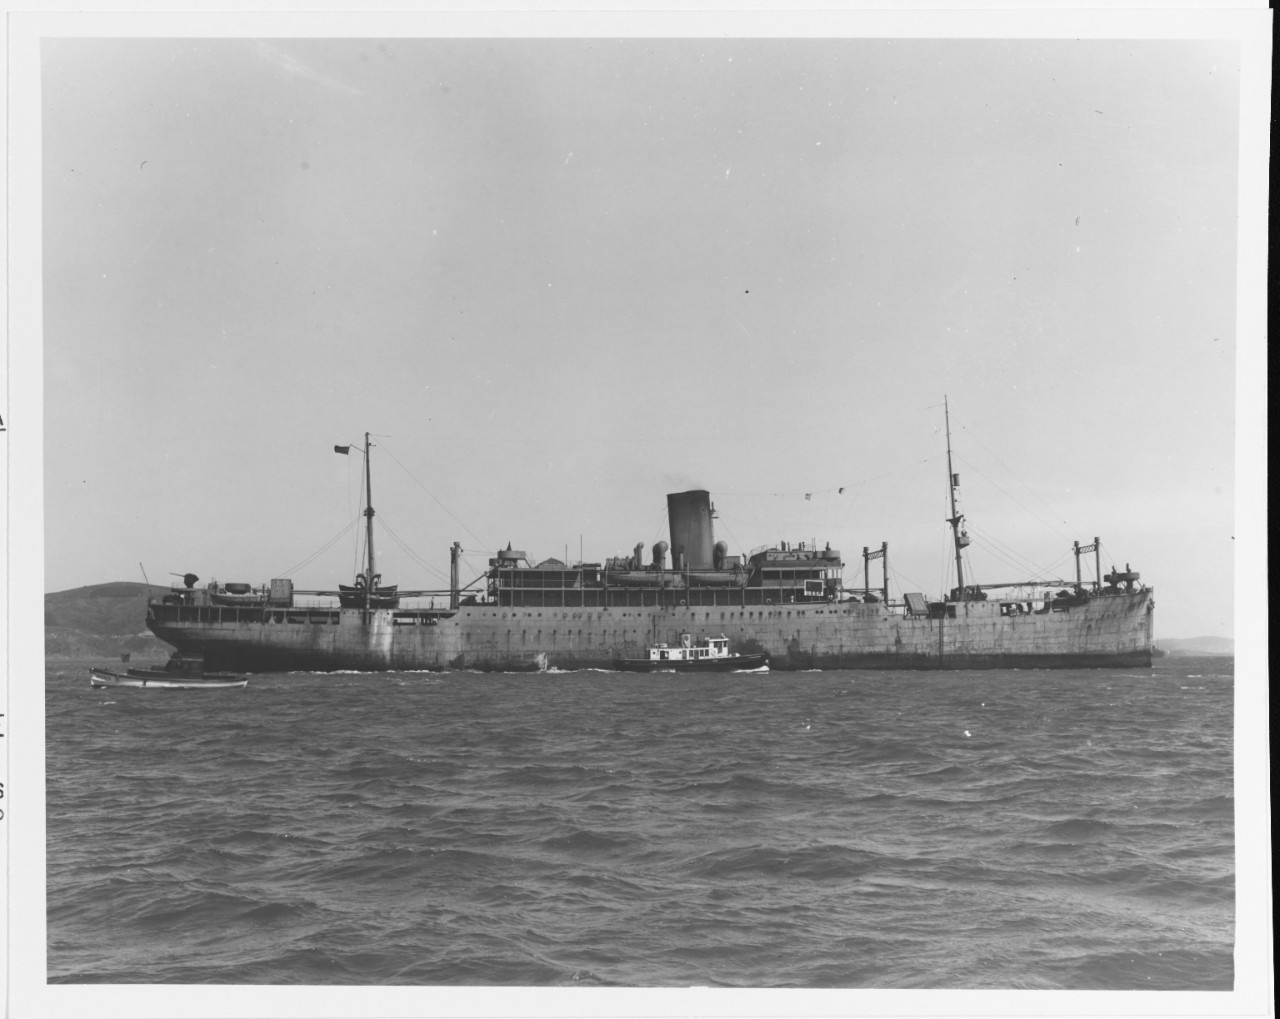 S.S. PISCHEVAYA INDUSTRIA (U.S.S.R. passenger-cargo ship, 1909-1979)